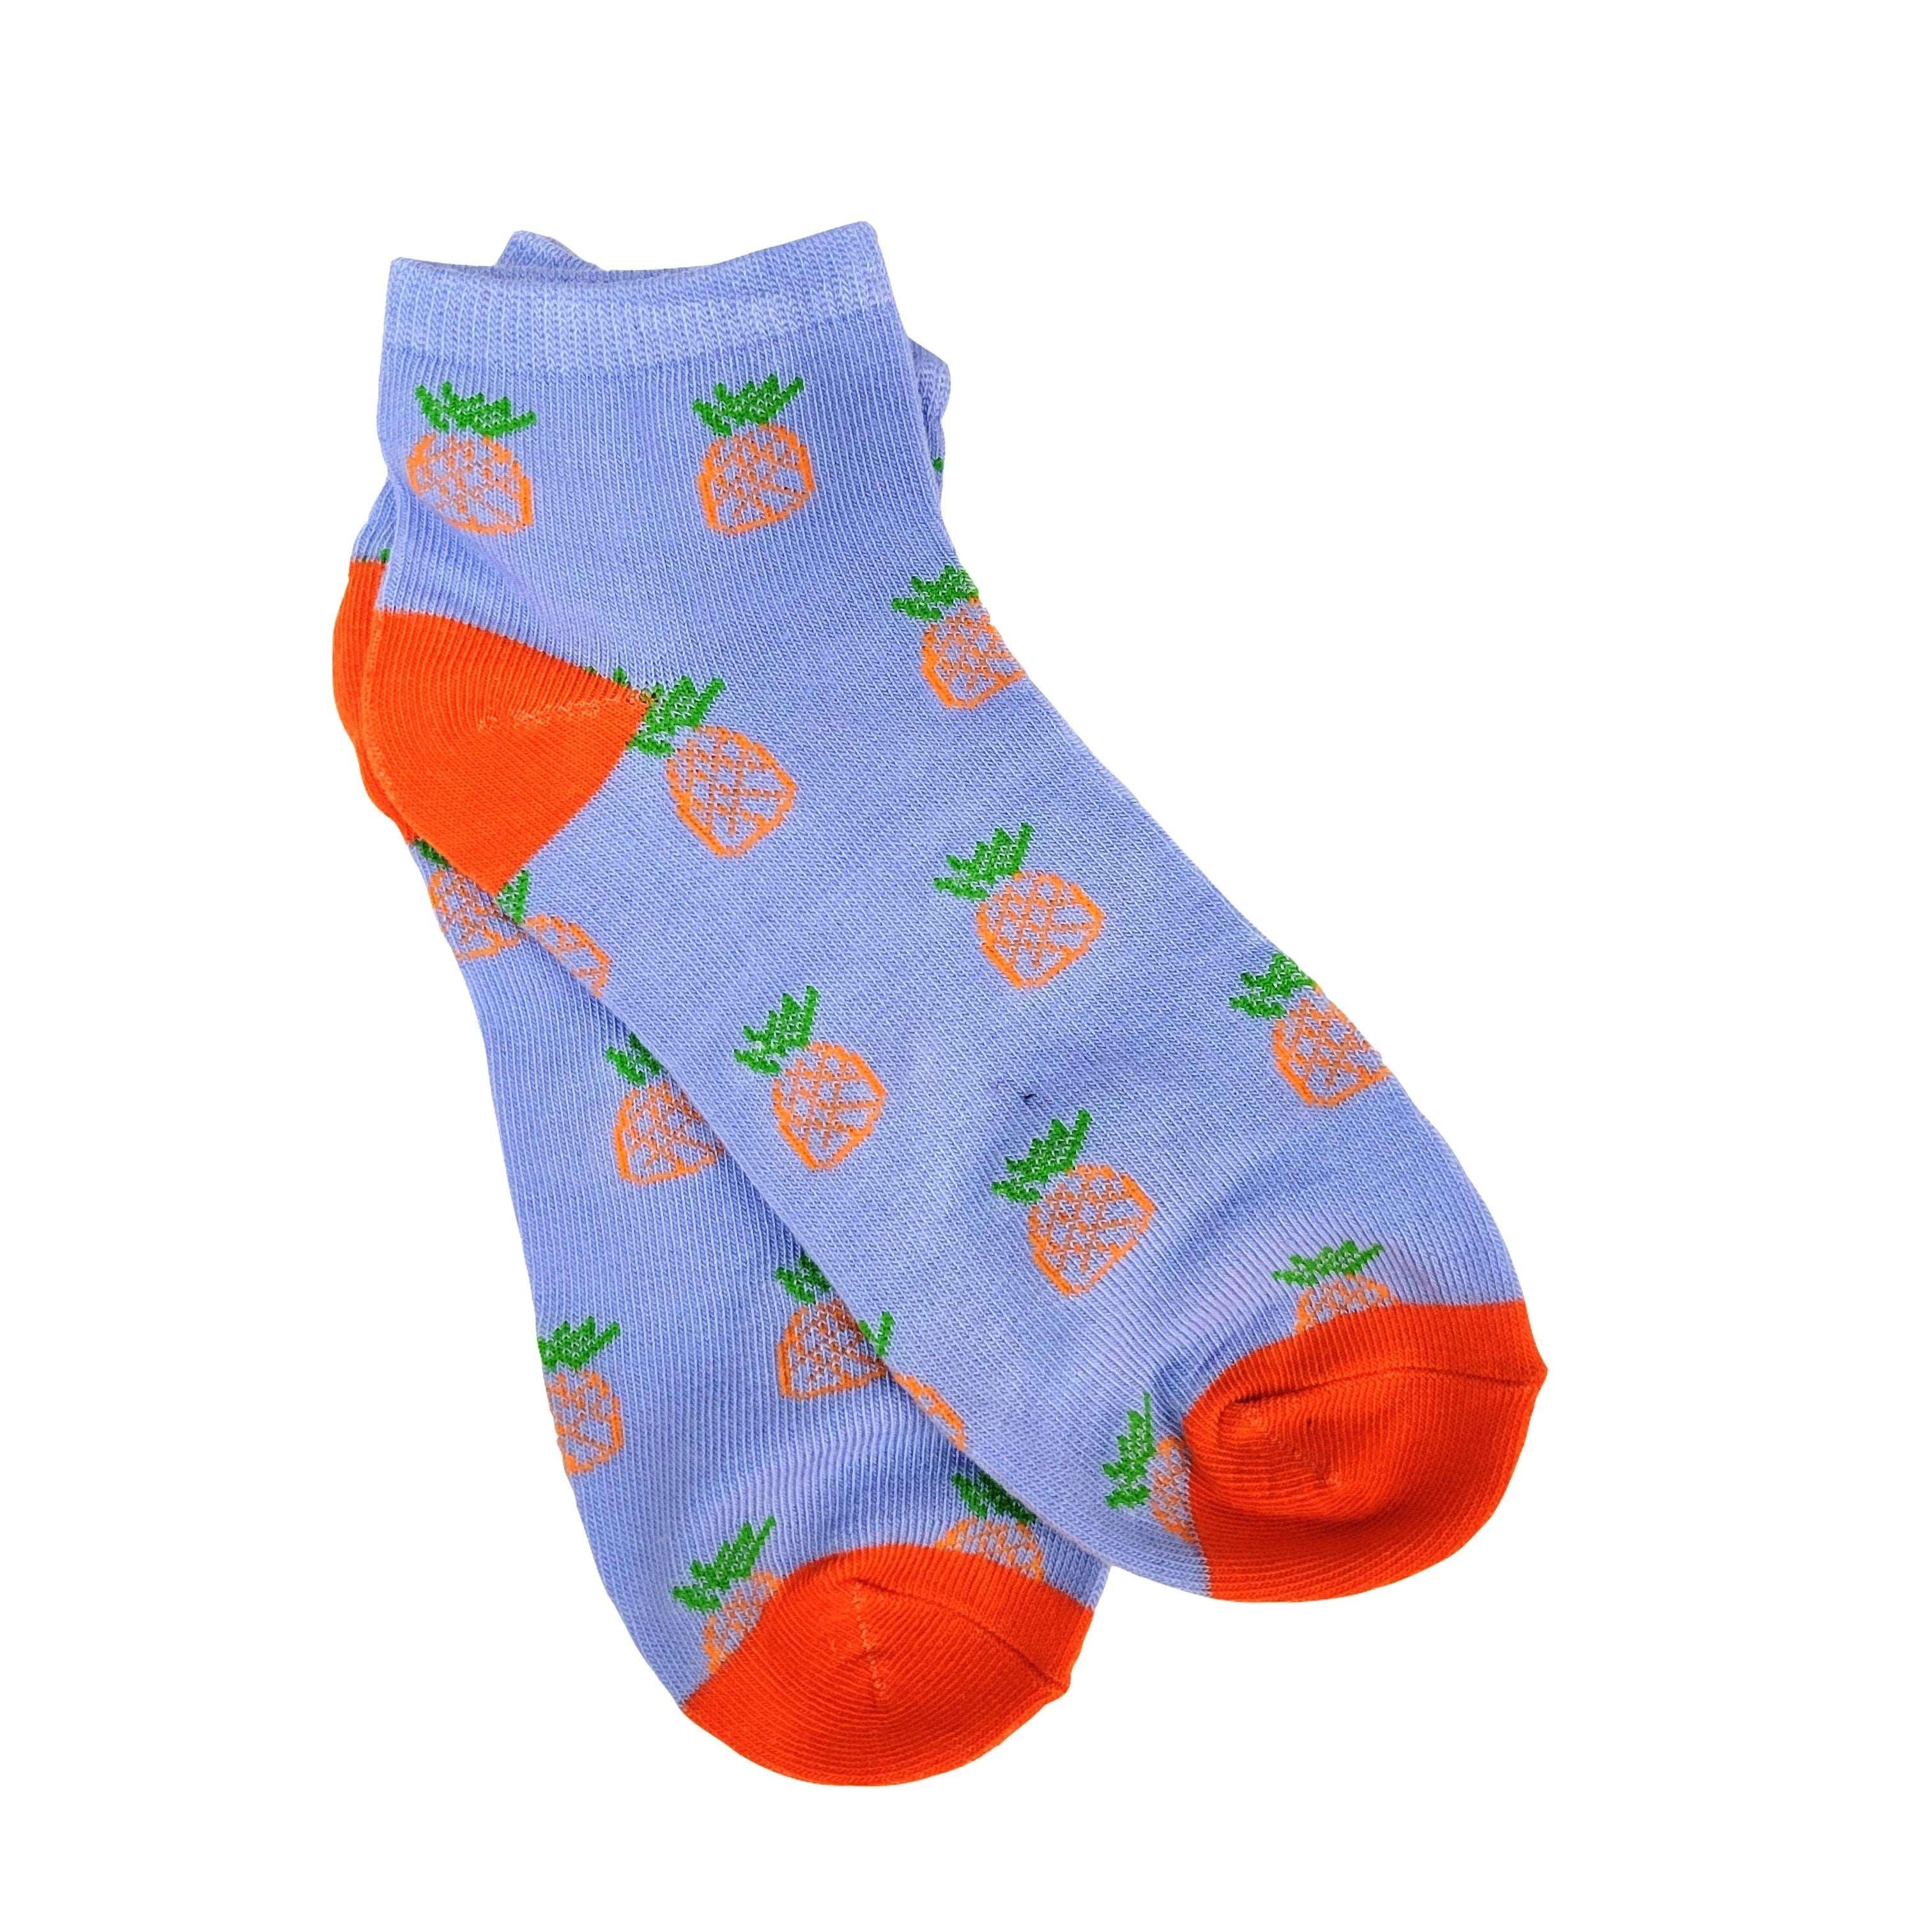 Fun Pineapple Patterned Ankle Socks (Adult Medium)